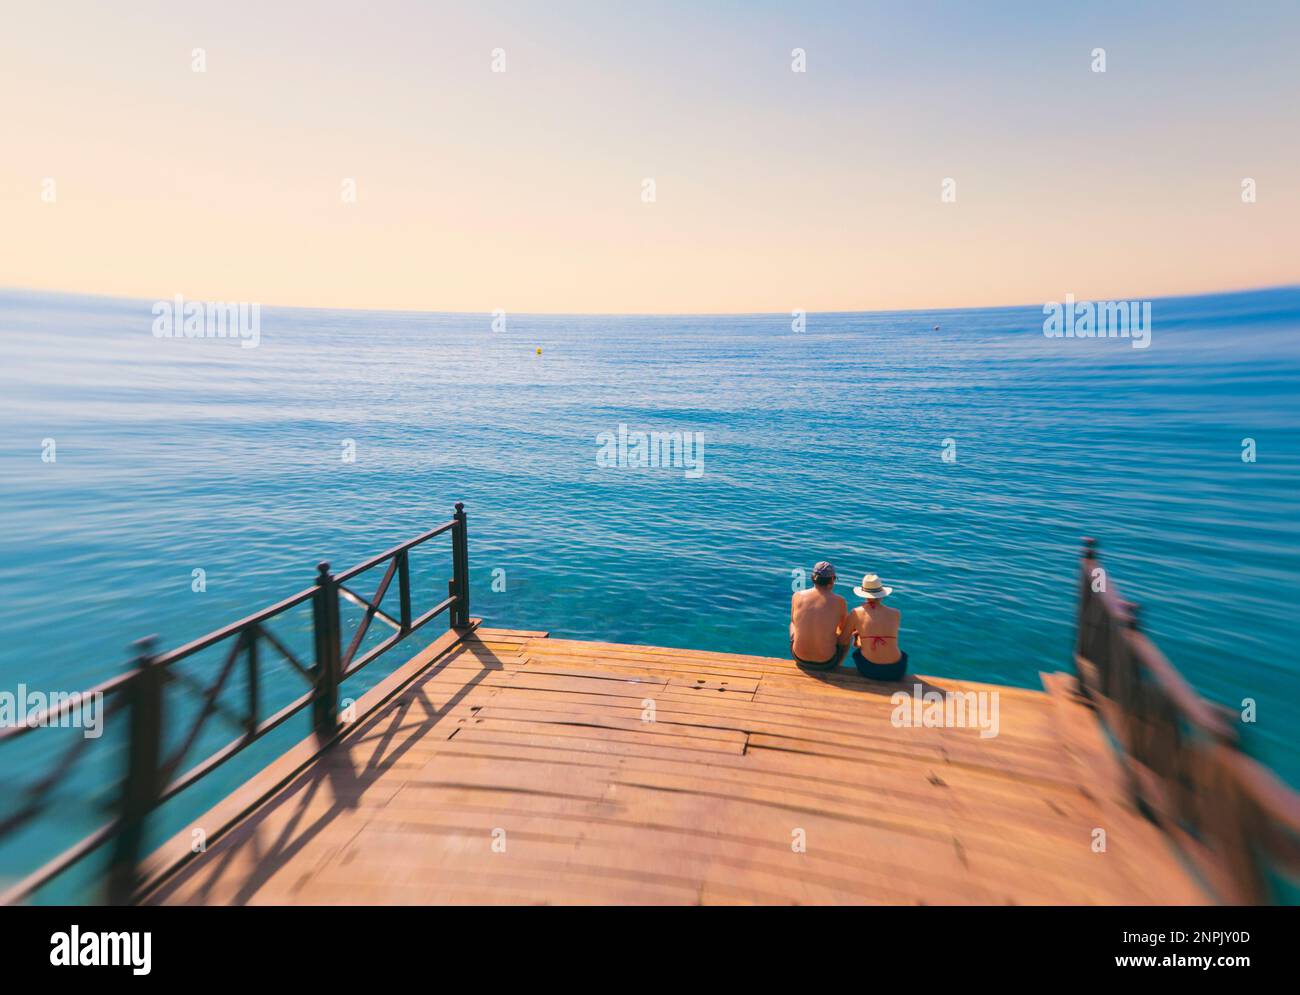 Marbella, Costa del Sol, Provinz Malaga, Andalusien, Südspanien. Ein Paar, das auf einem Holzpier sitzt. Stockfoto